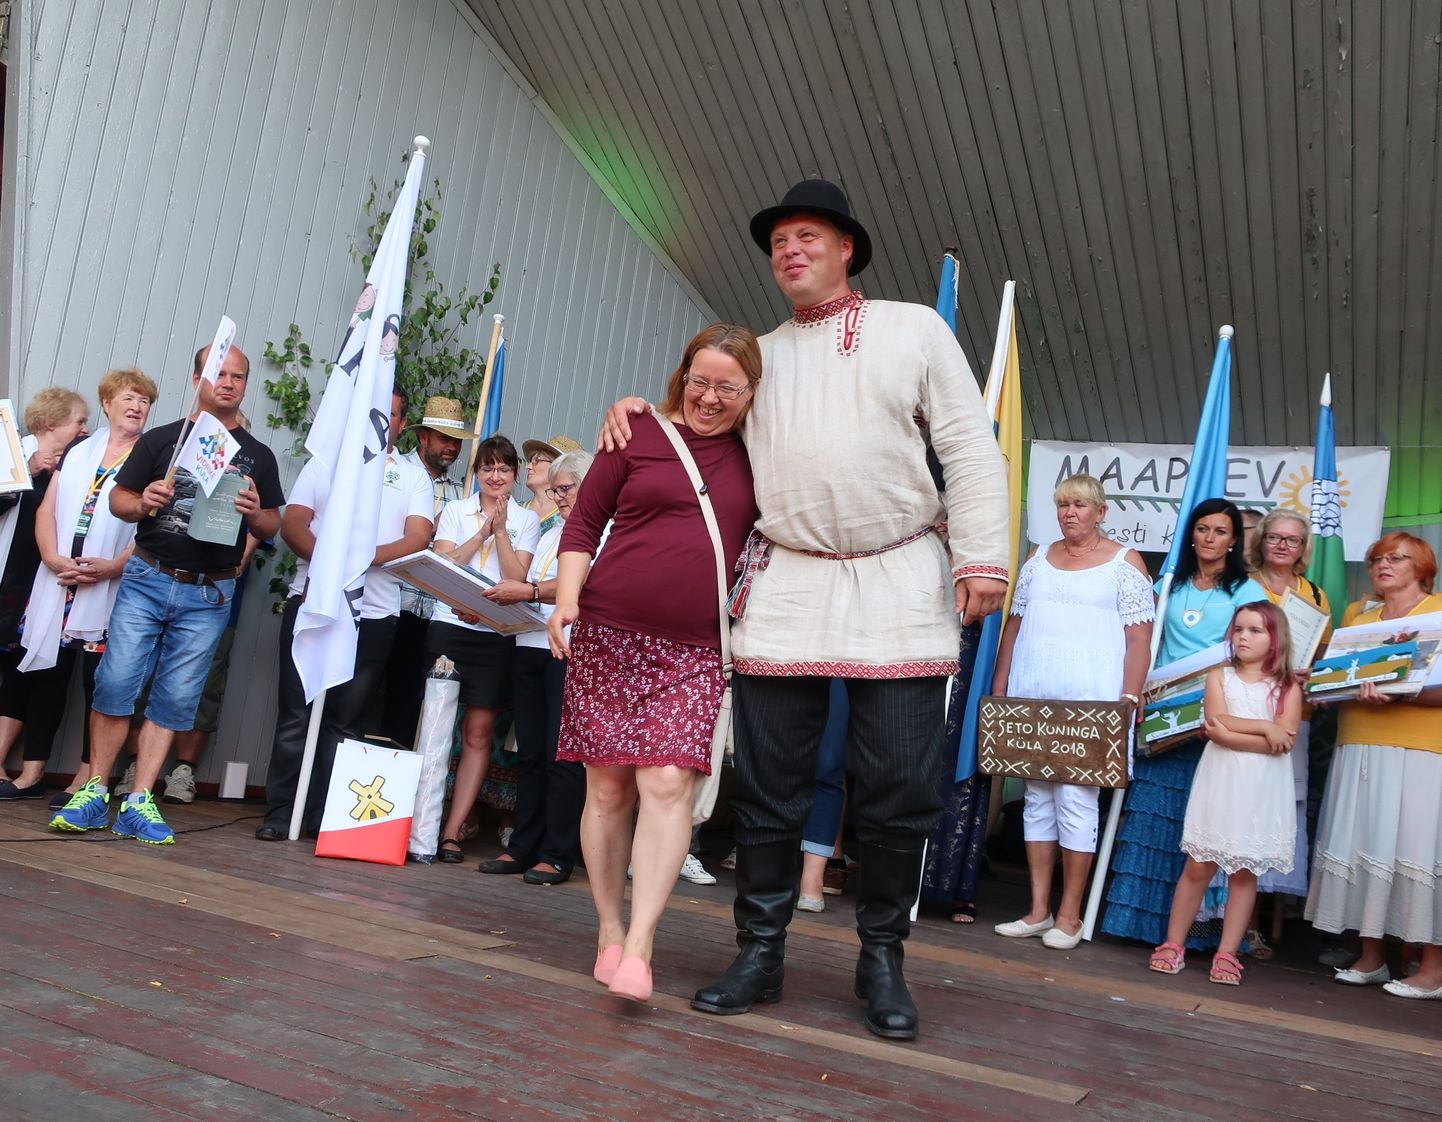 Lüübnitsa külavanem Urmas Sarja maapäeval aasta küla tunnustust vastu võtmas koos oma põhilise konkurendi, Vidrike külavanema Ivika Nõgeliga.